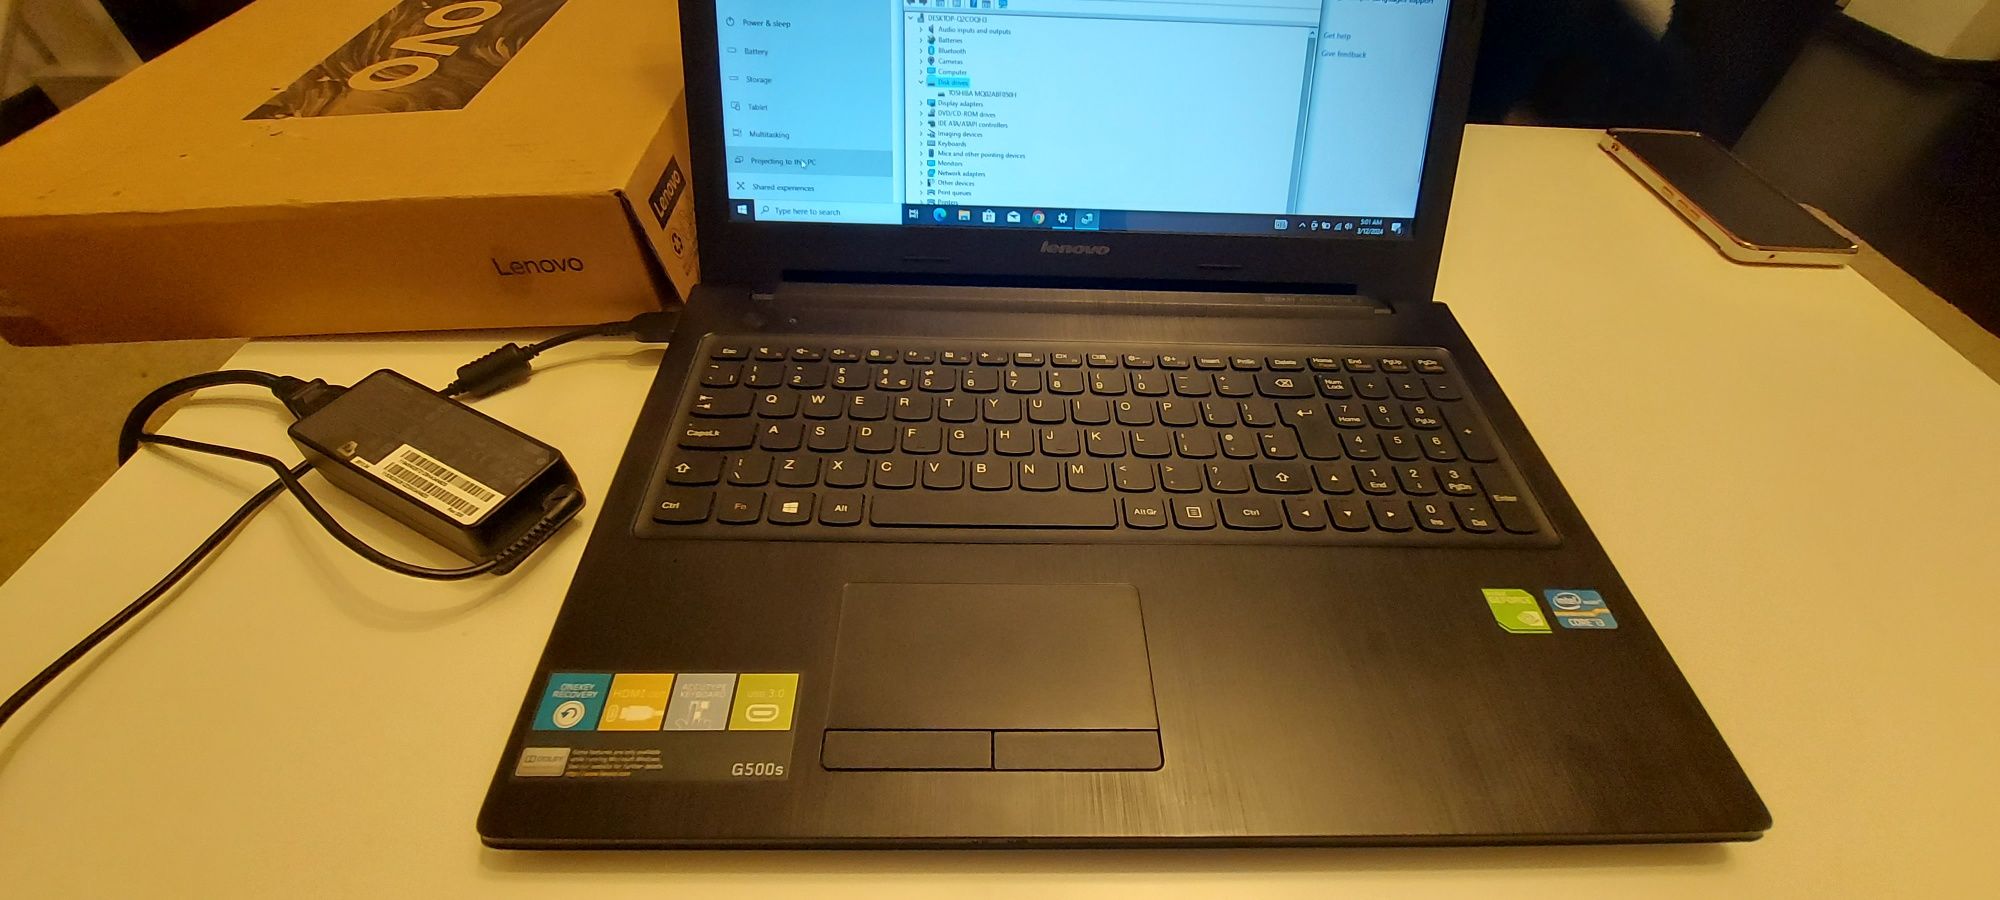 Laptop Lenovo G500s